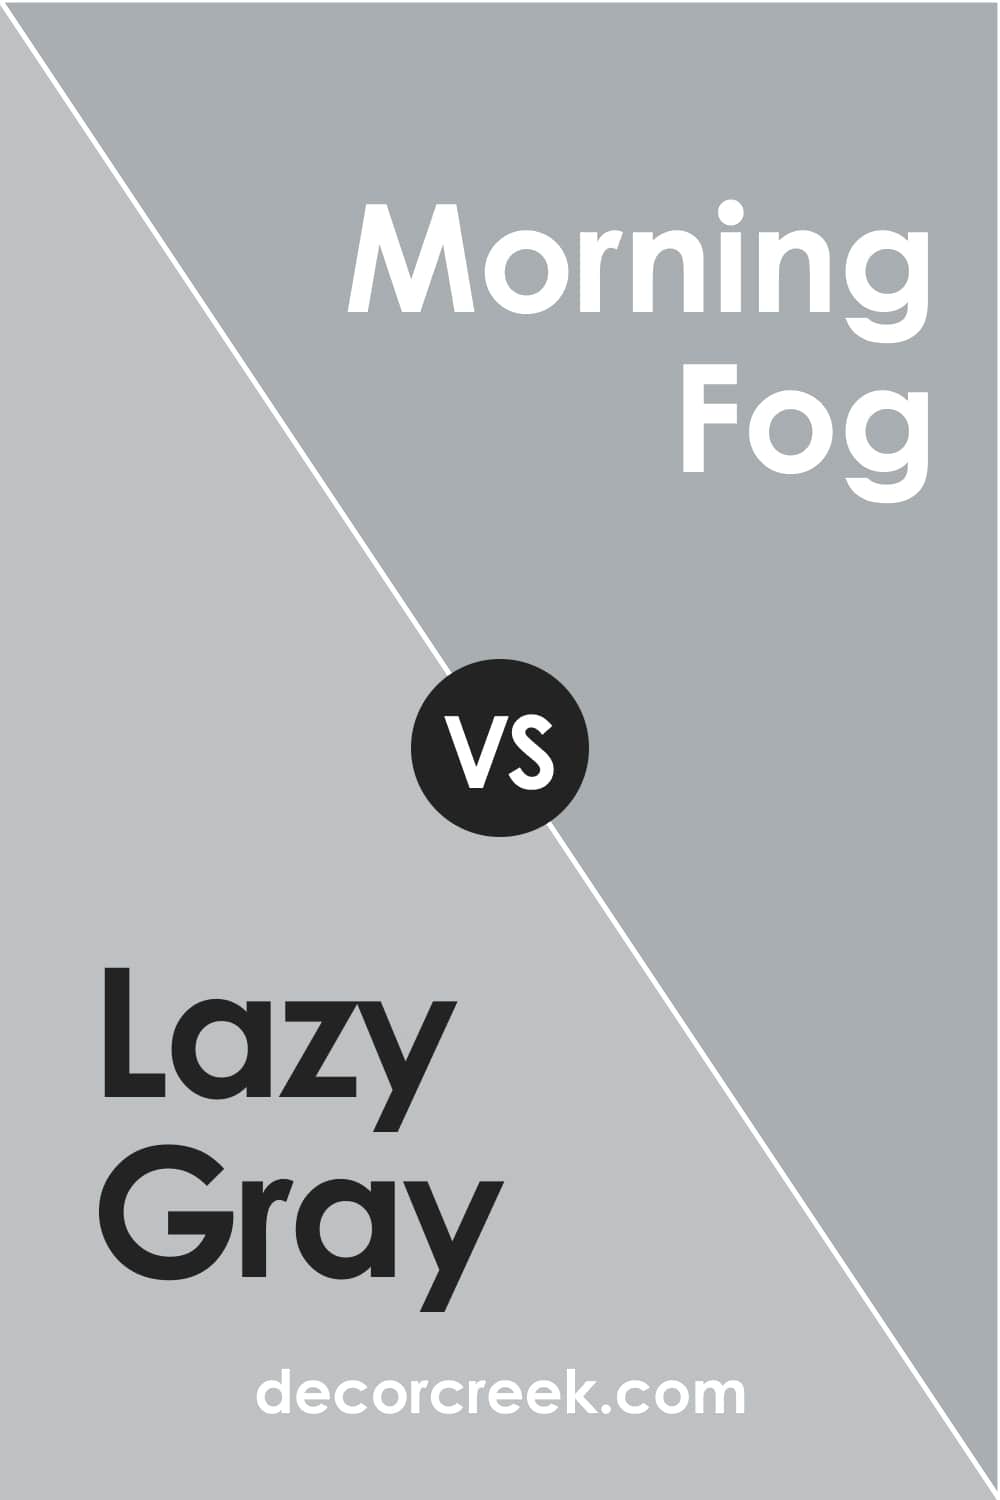 Lazy Gray vs. Morning Fog